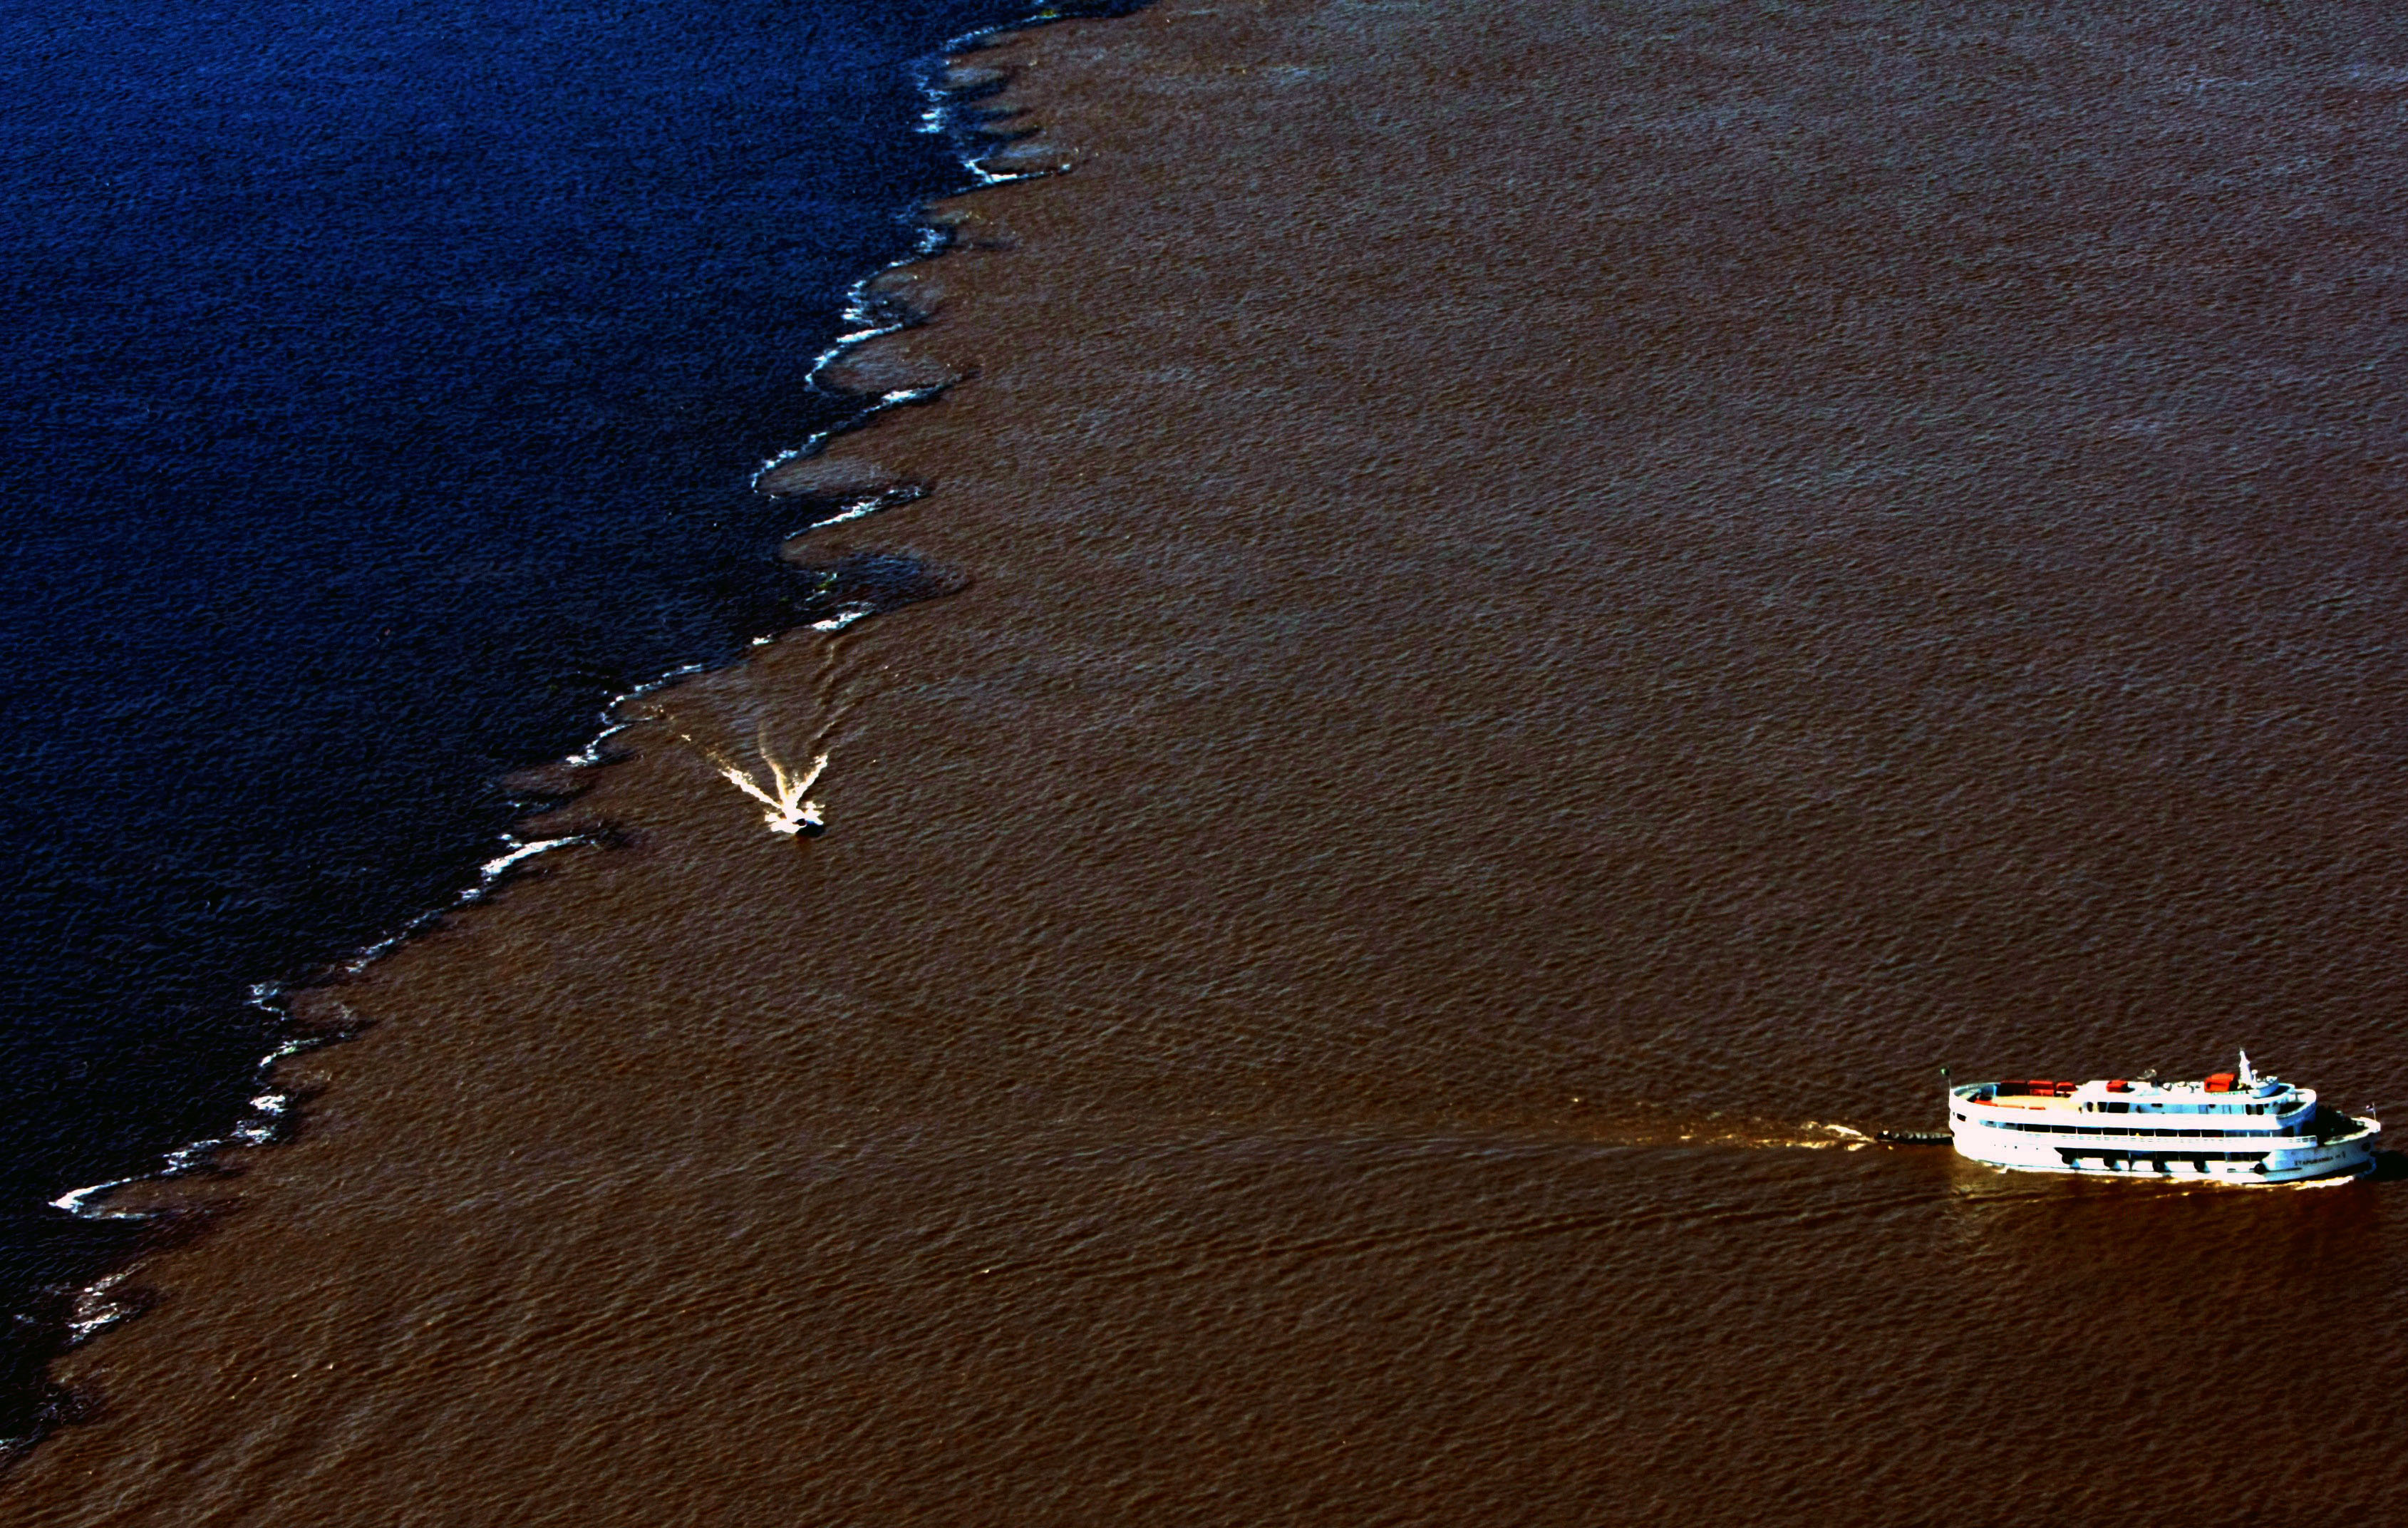 No encontro das águas dos rios Negro e Solimões, em Manaus,  a vazão média é de 3,8 trilhões de metros cúbidos por ano. (Foto: Alberto César Araújo/FotoAmazonas)